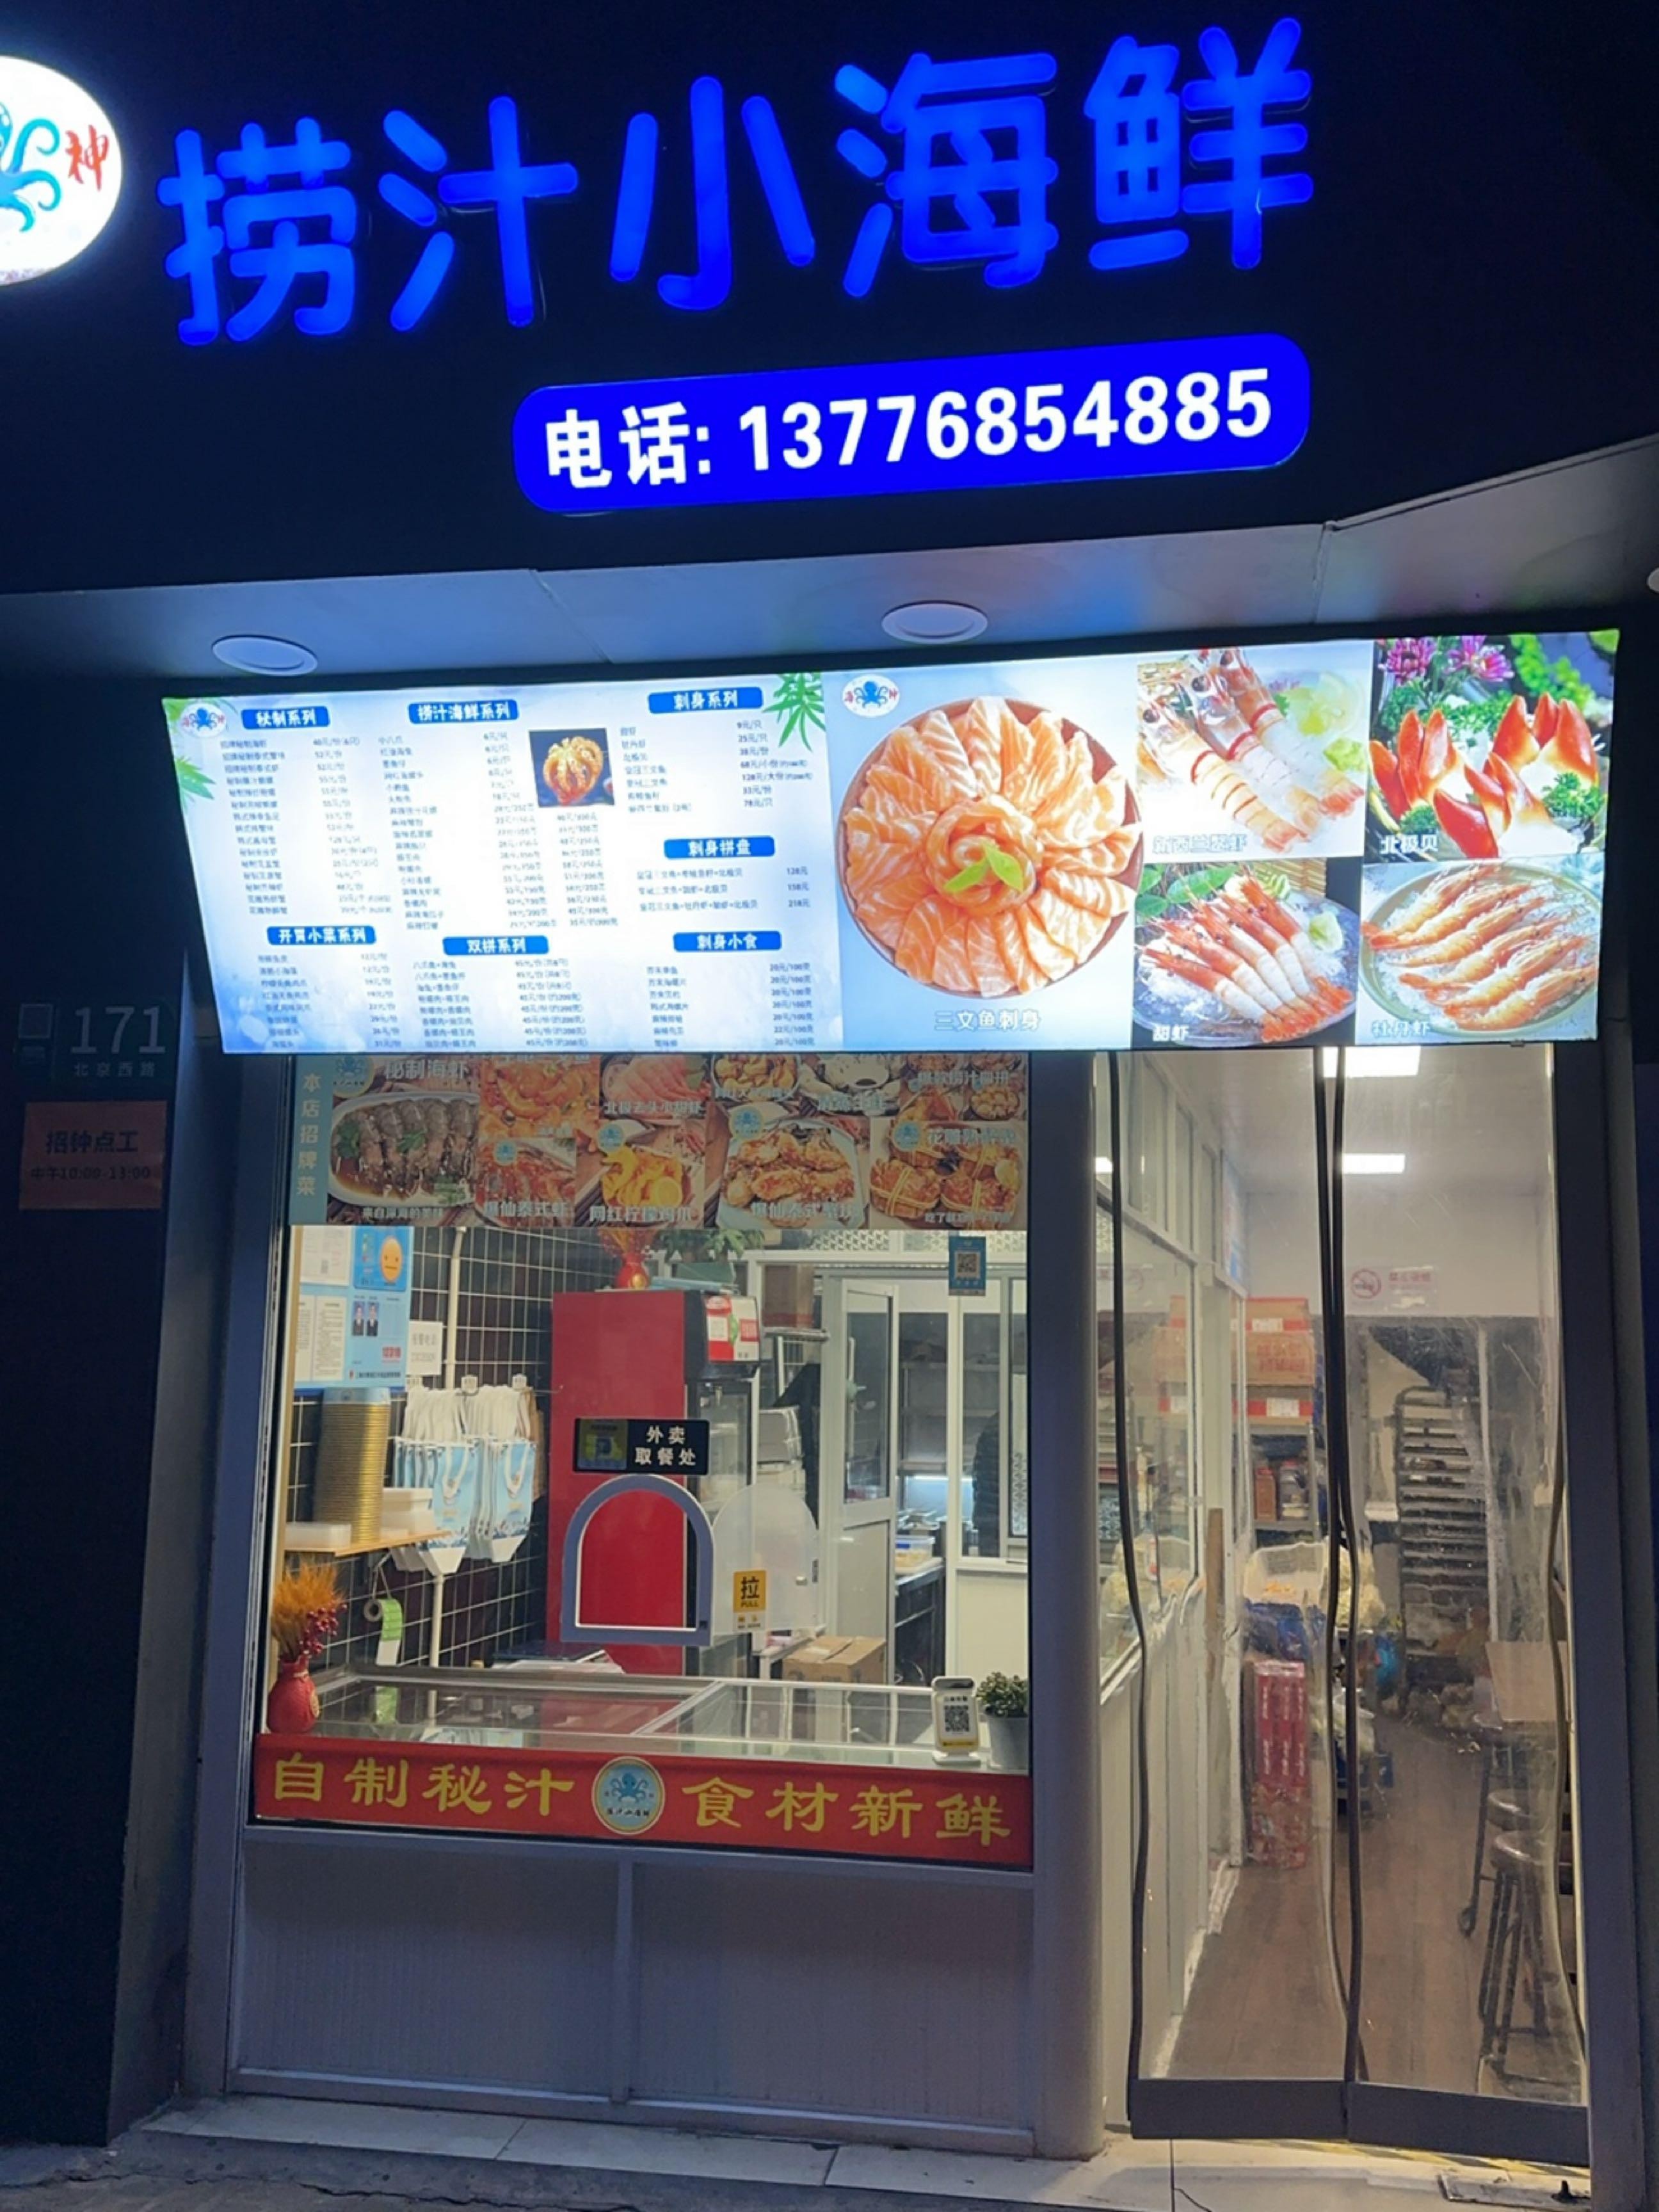 店名:海神捞汁小海鲜(北京西路店) 营业时间:10:00